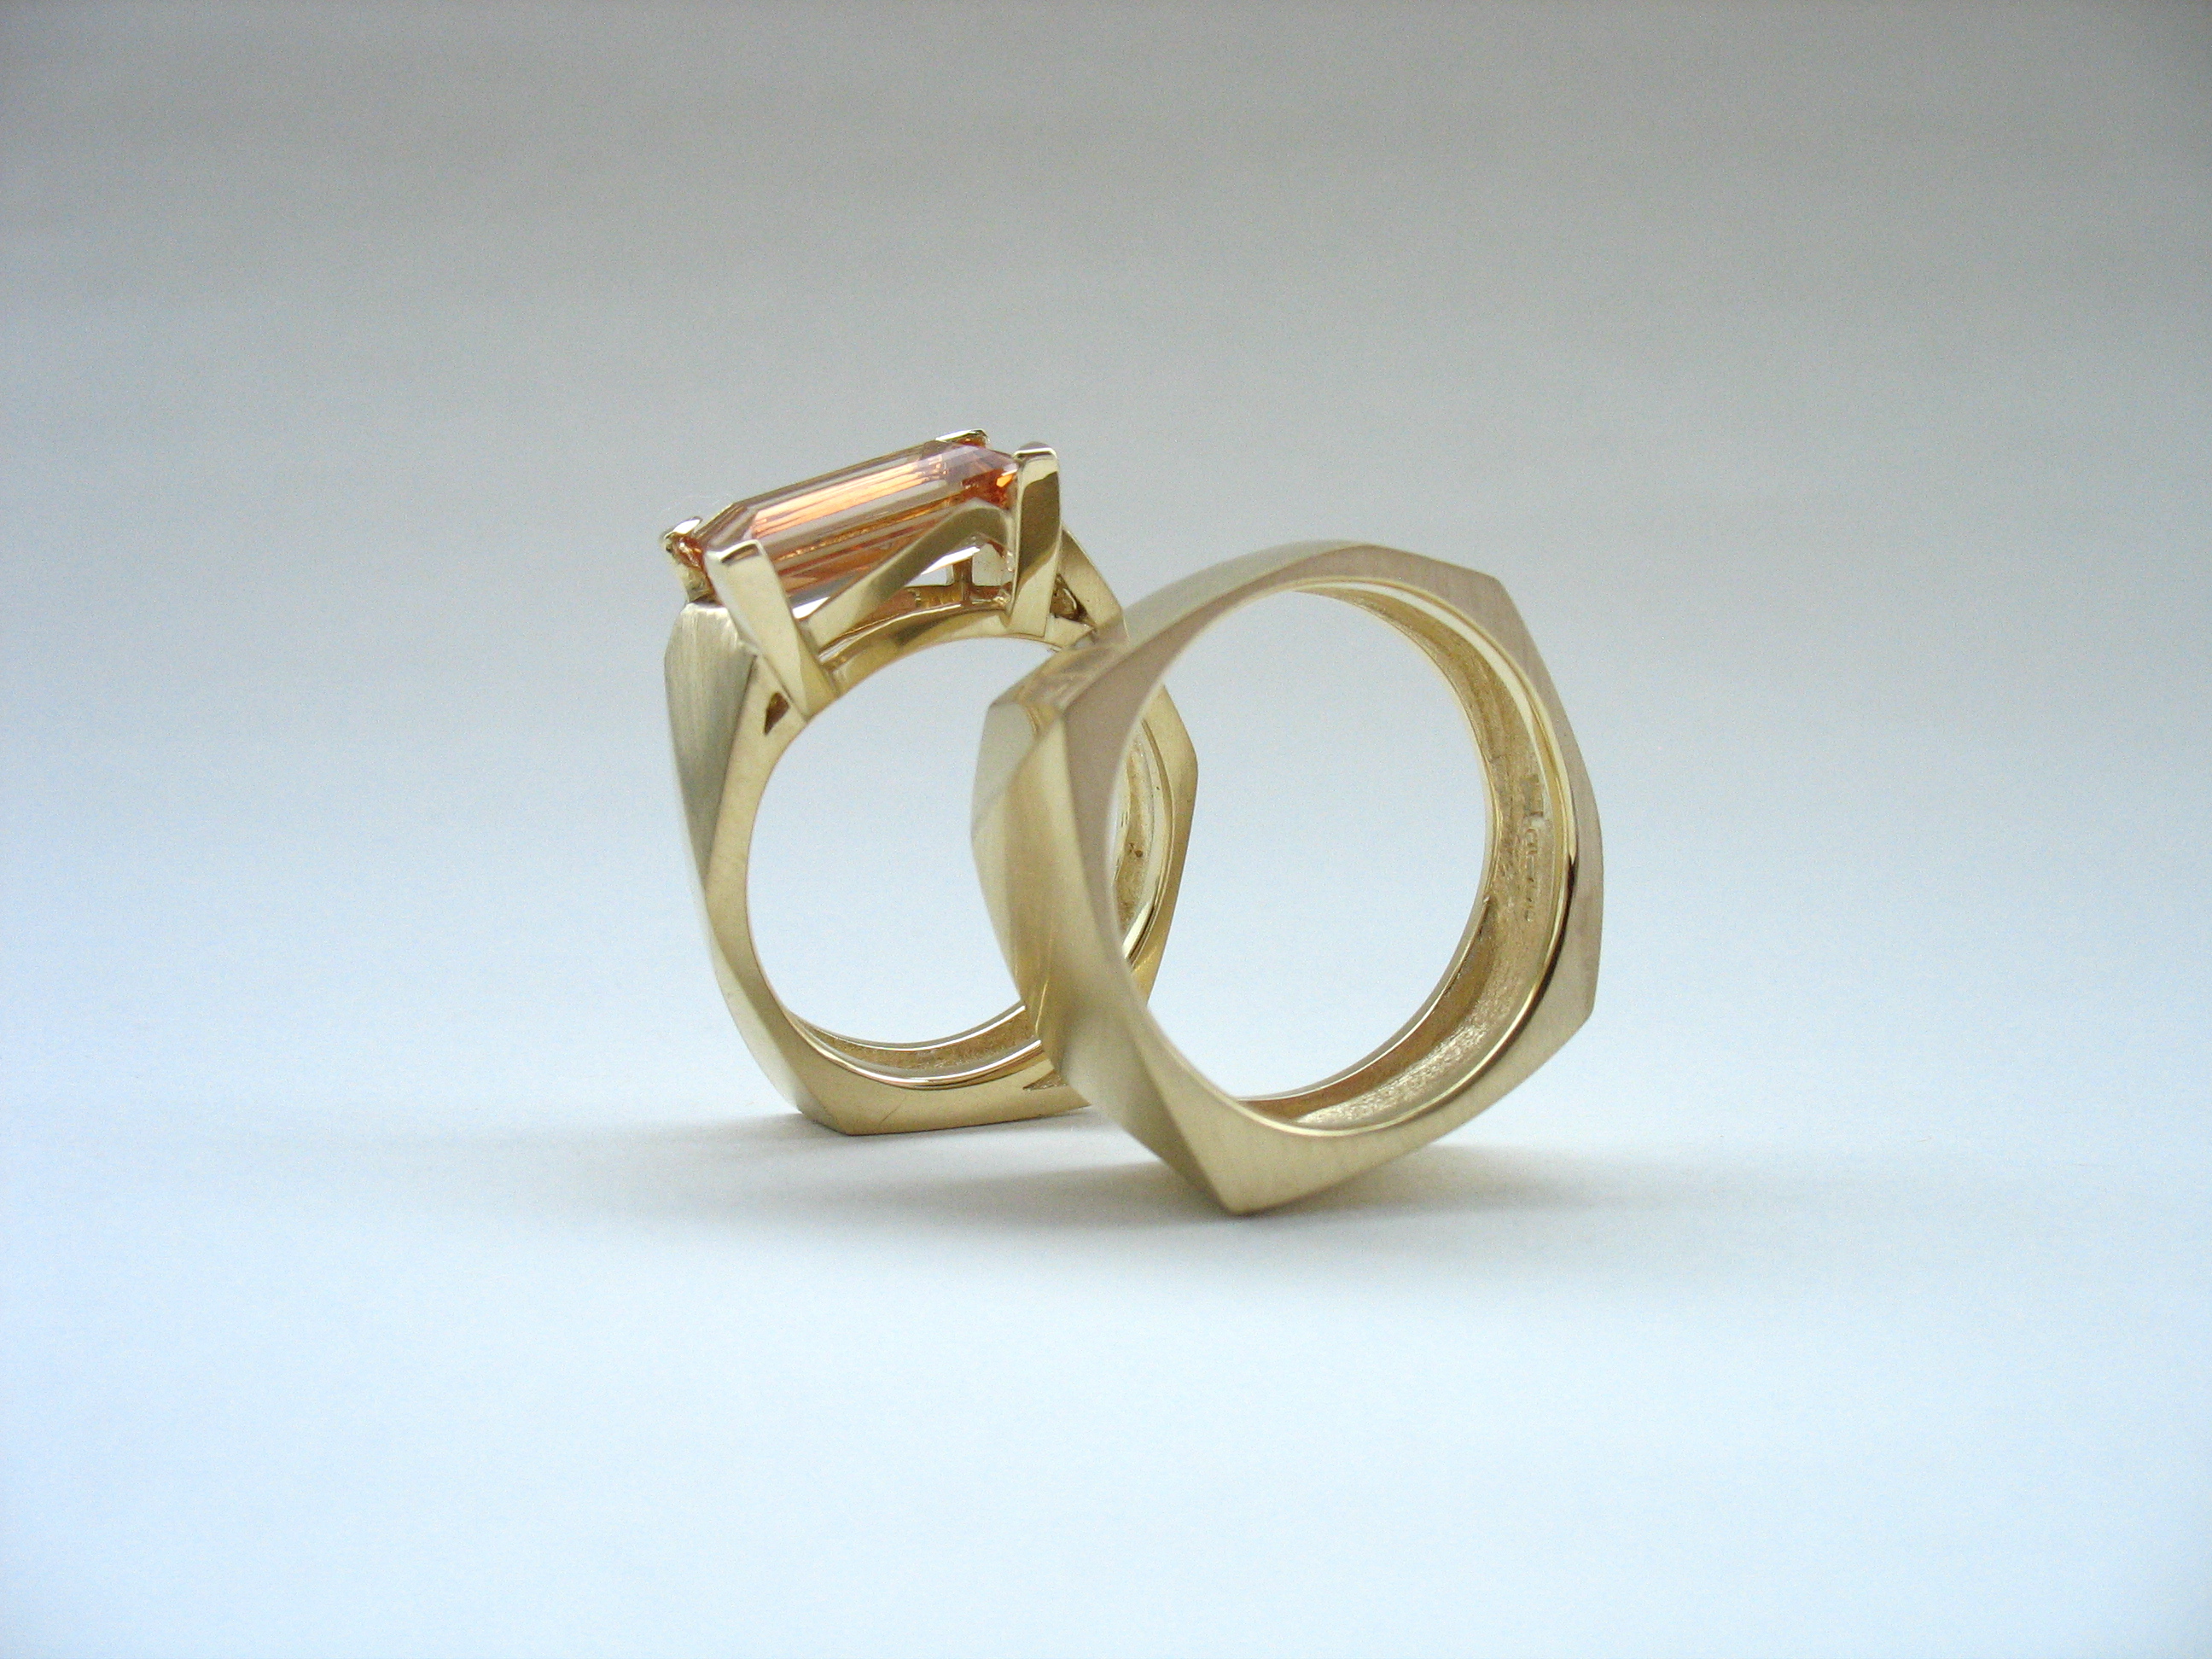 Topaz Engagement Ring and Wedding Band. Image: Courtesy of Melanie Eddy